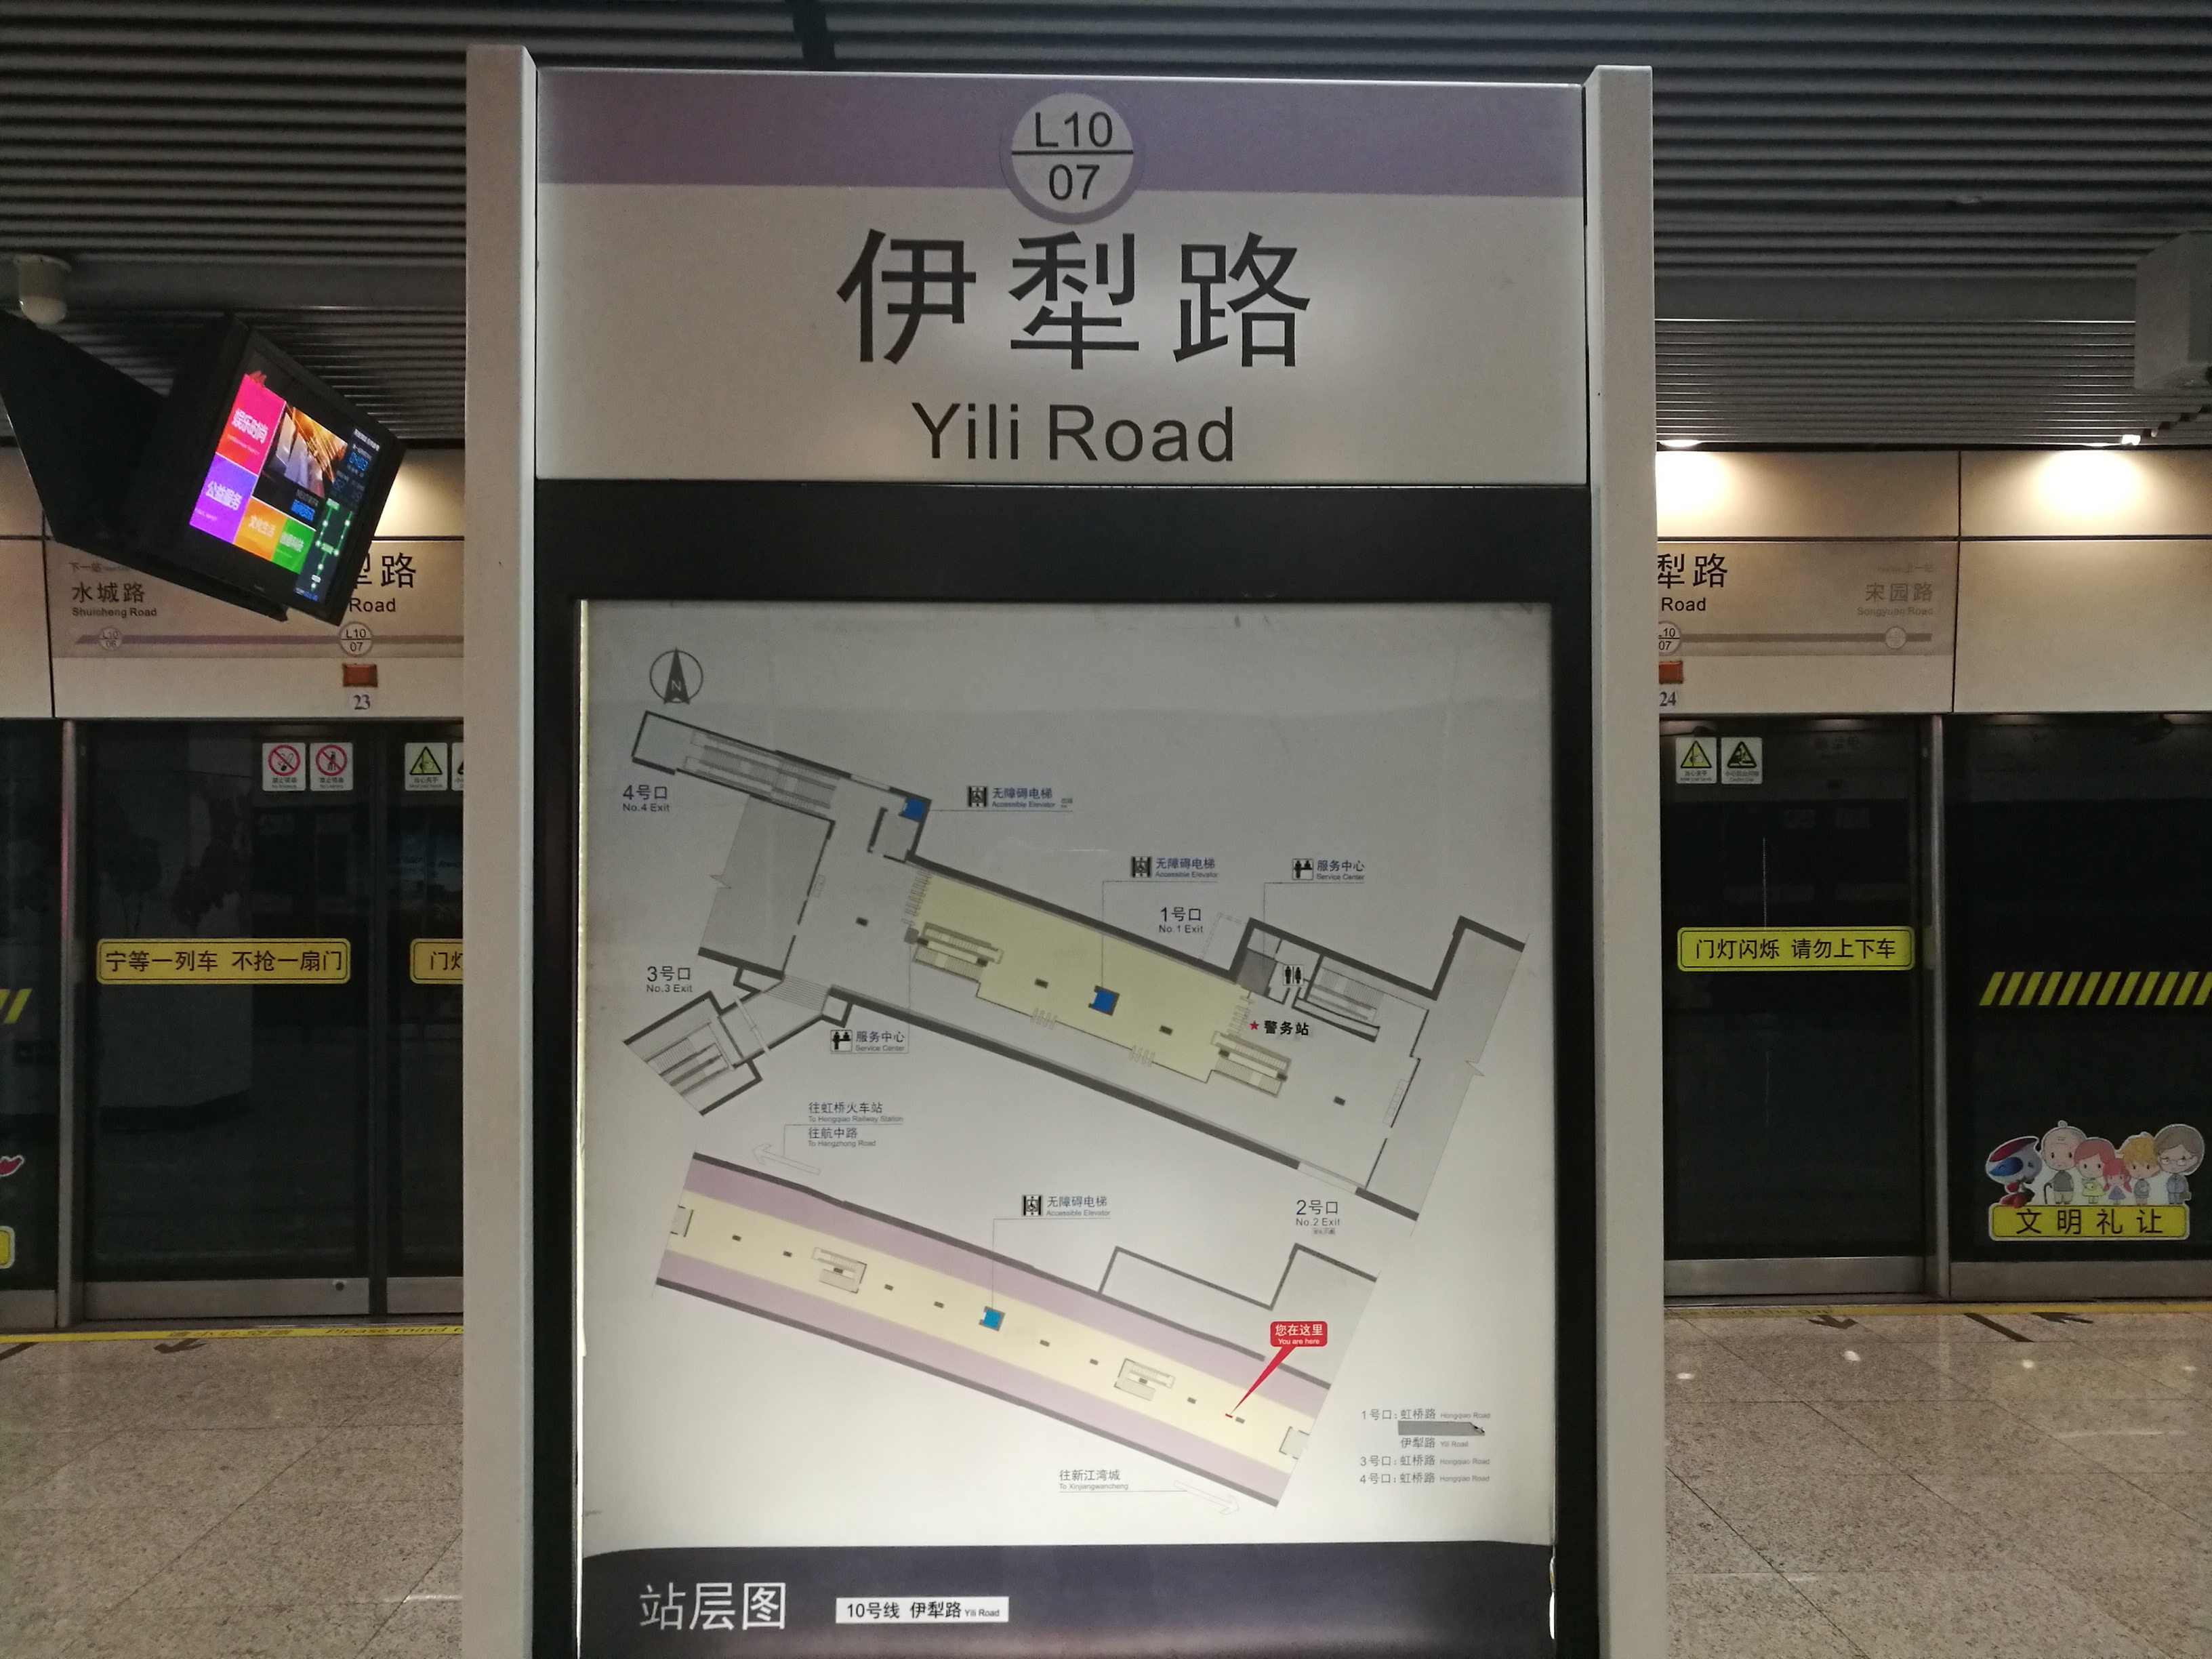 评上海伊犁路地铁站的痛点:失去了与15号线与10号线换乘的机会